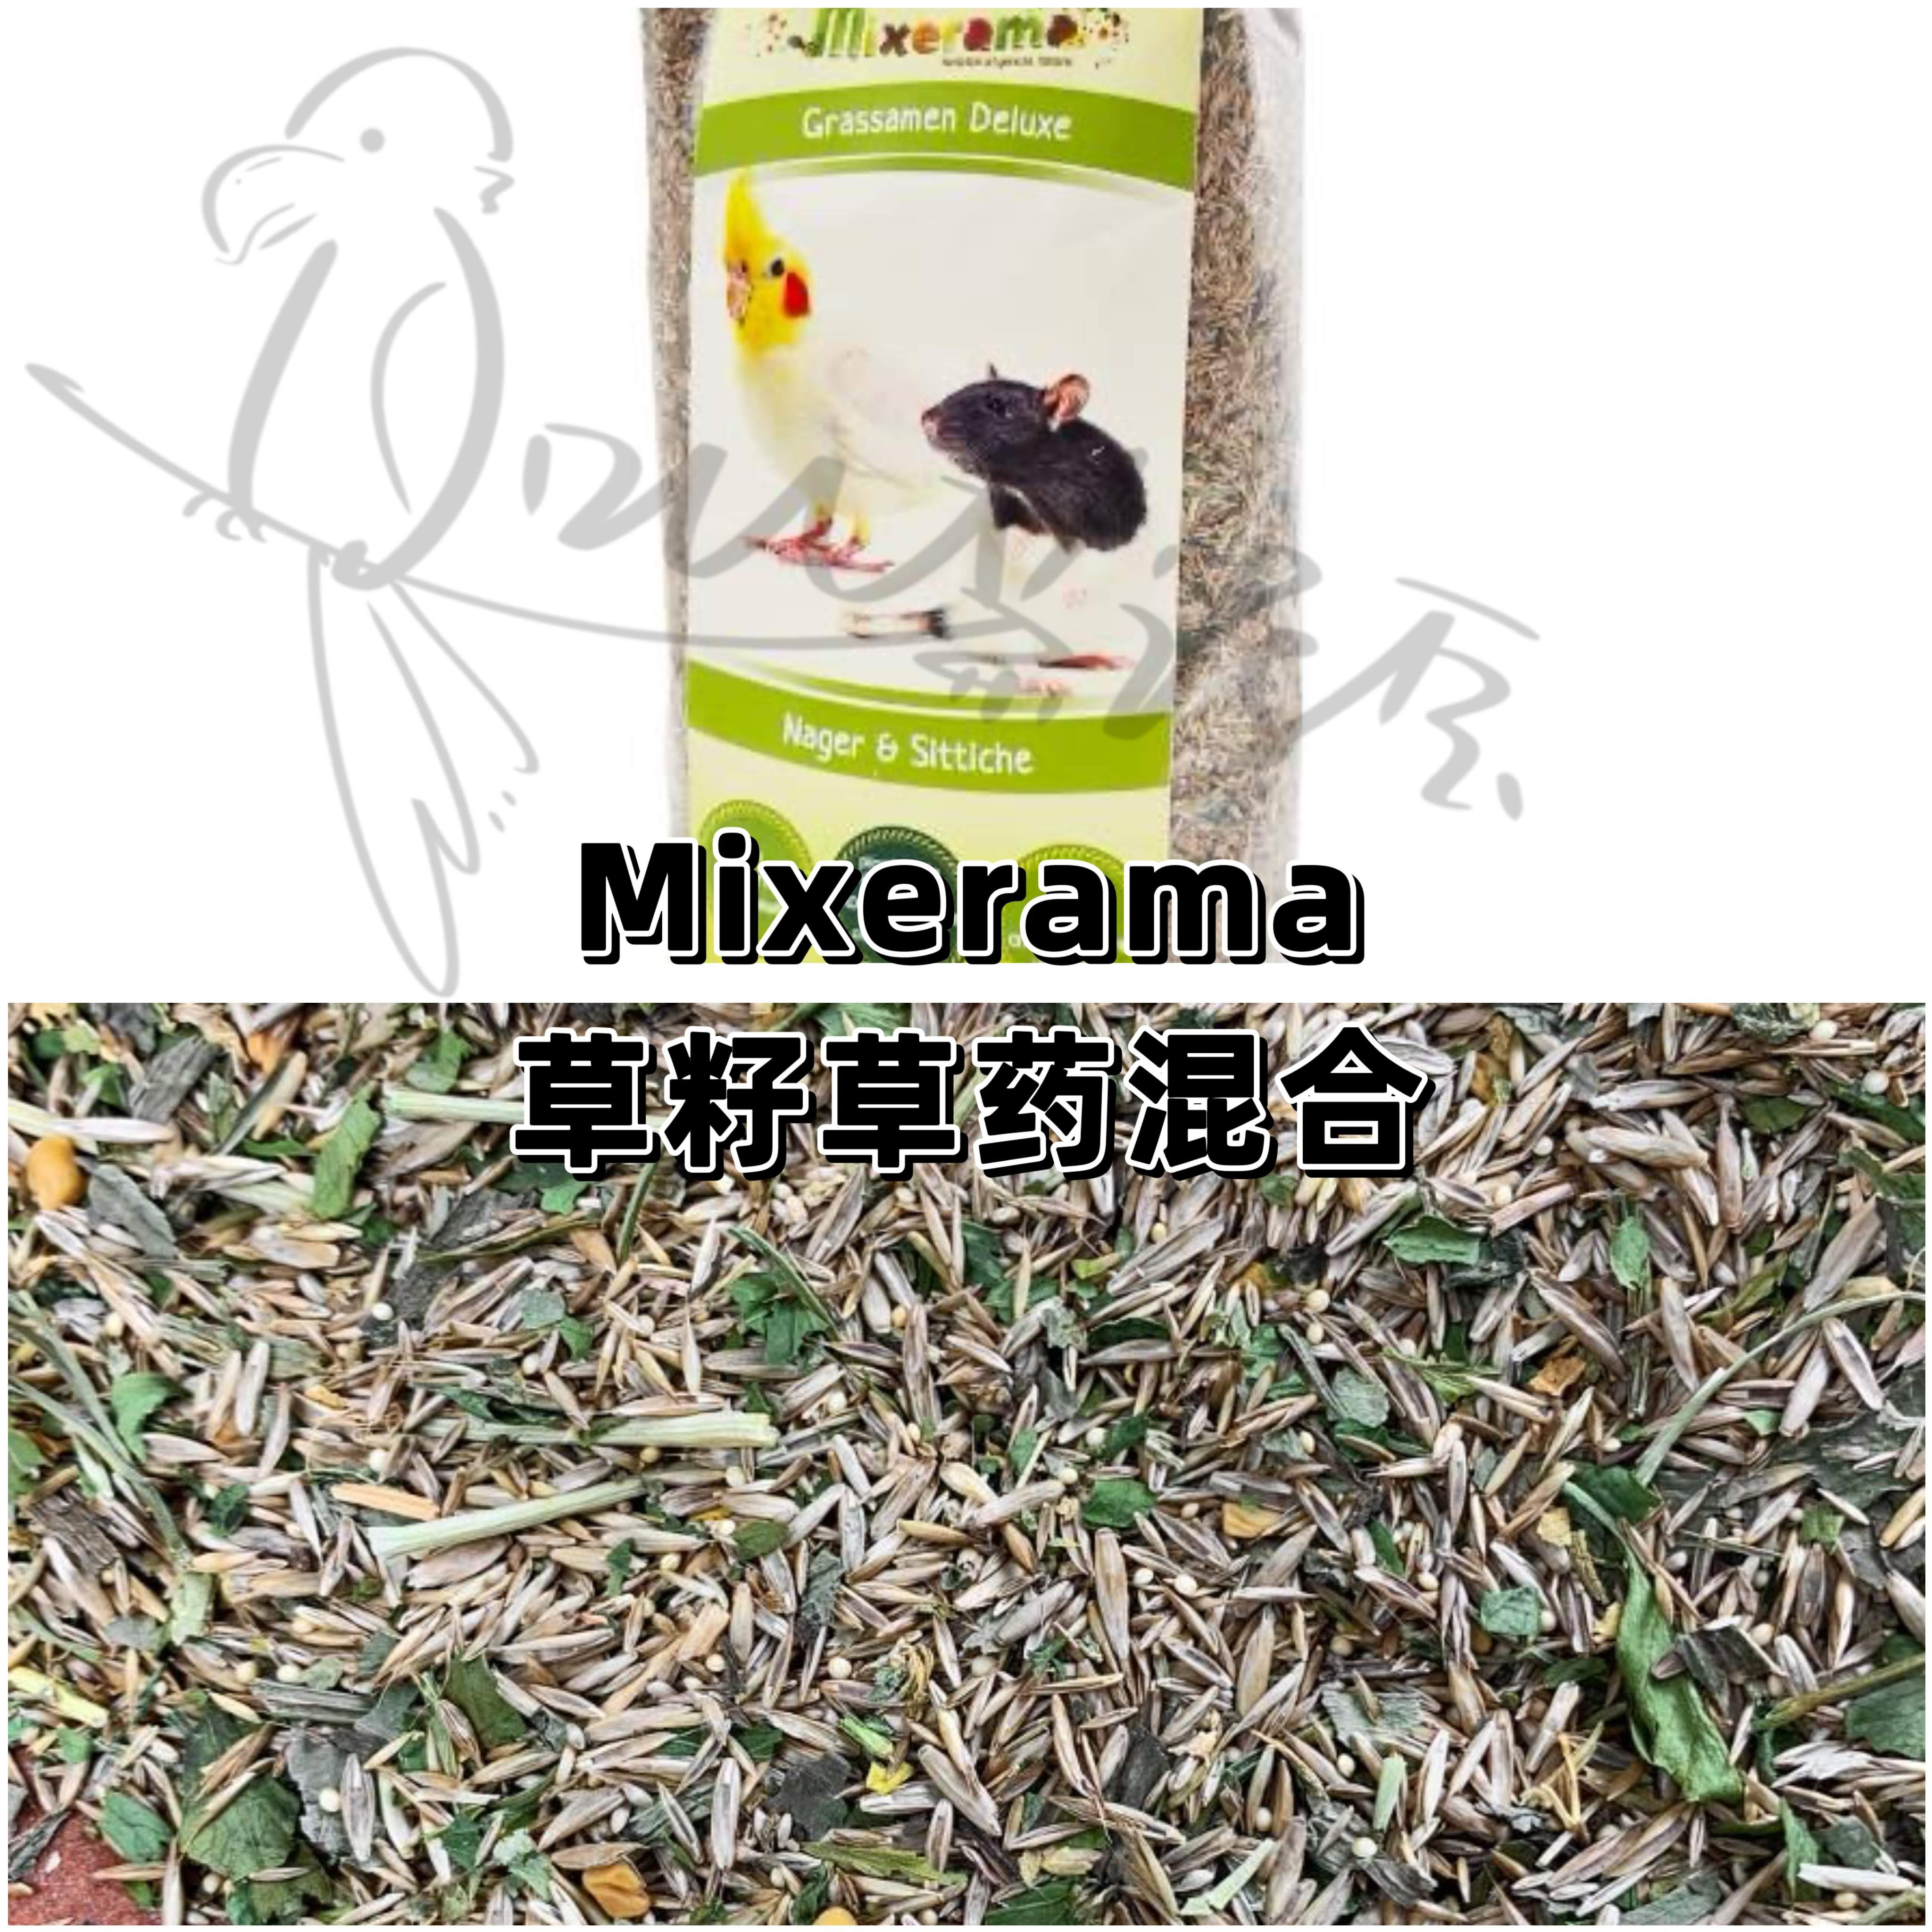 【鹦鹉拌饭】Mixerama草籽草药混合 低卡路里可每天食用 宠物/宠物食品及用品 鸟 原图主图